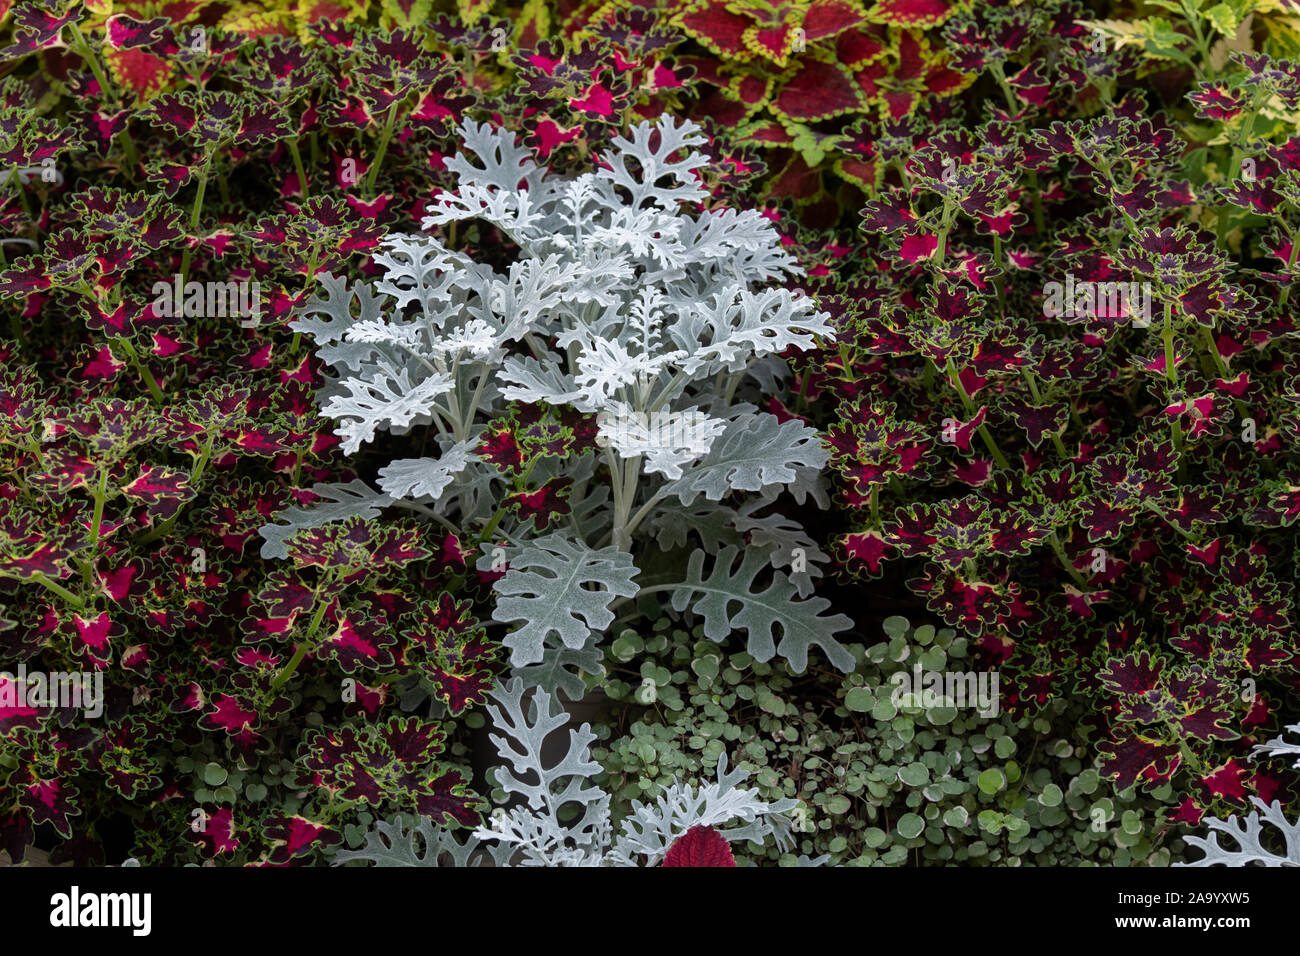 Senecio cineraria ‘Silver dust’ and Solenostemon ‘Satellite mix’. Silver Ragwot ‘Silver dust’ and Coleus plant foliage Stock Photo